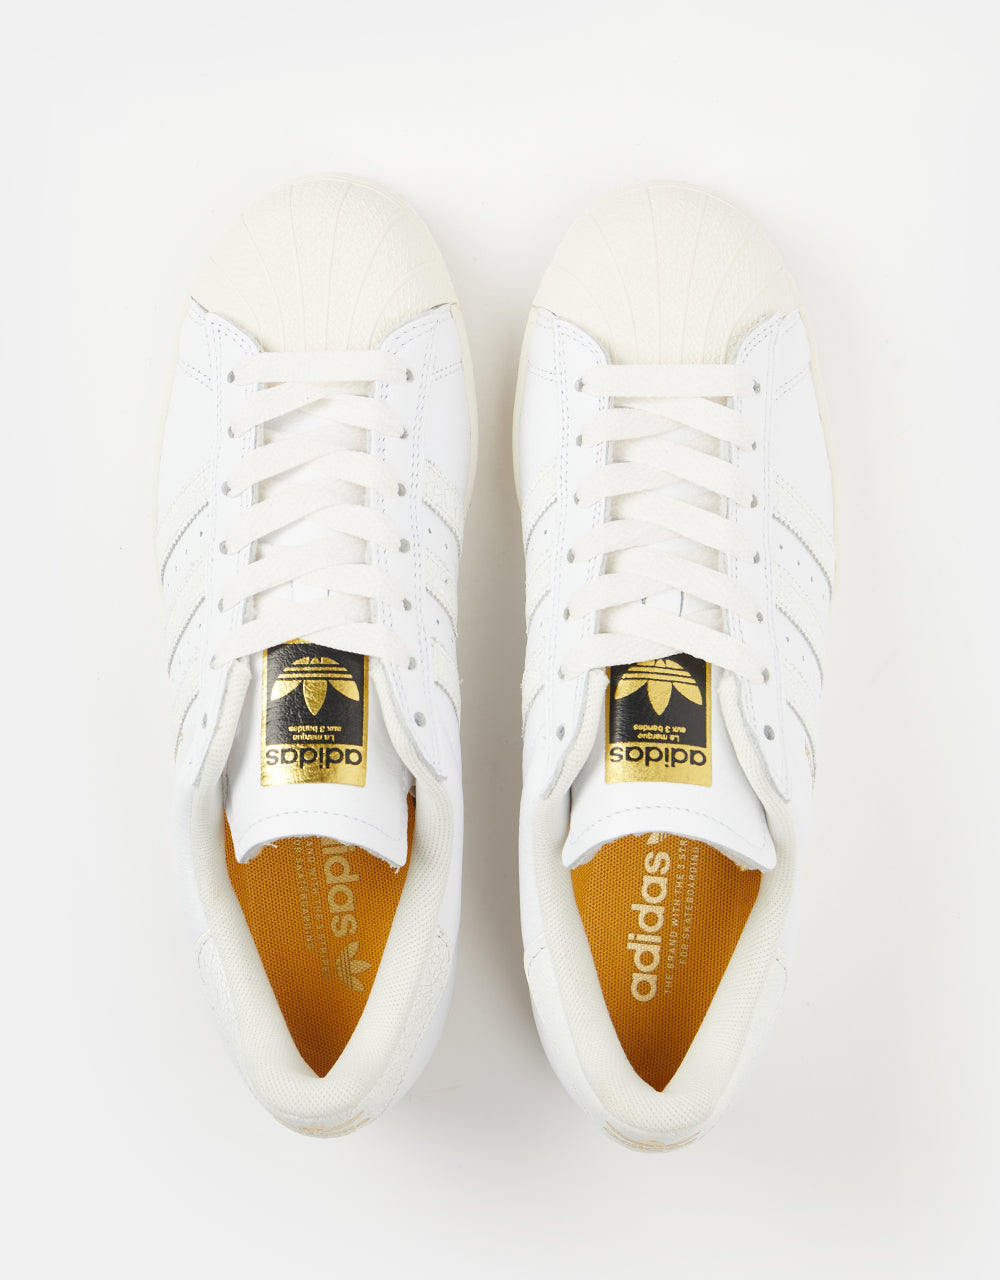 adidas Superstar ADV Skate Shoes - White/White/Chalk White